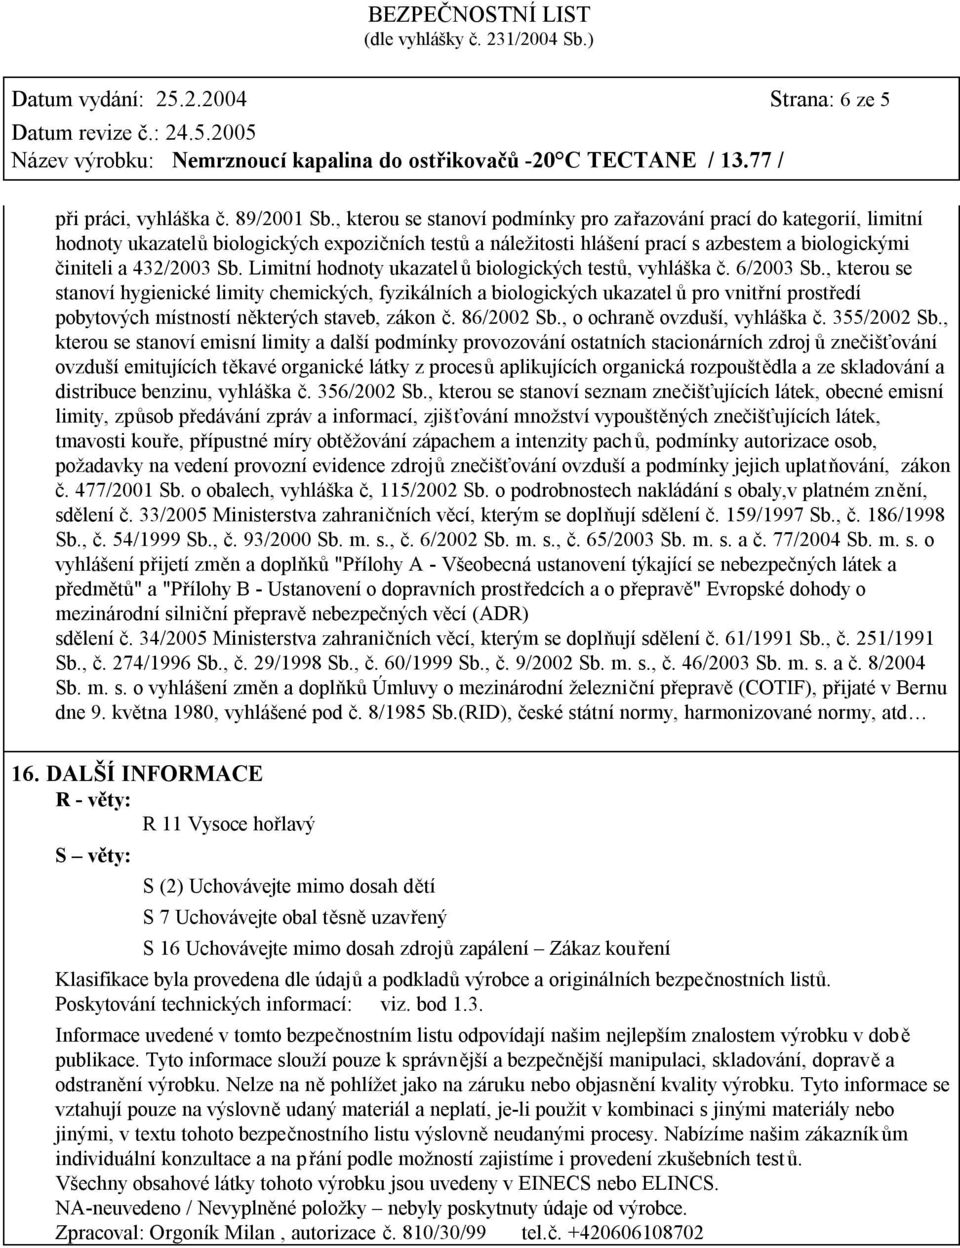 Limitní hodnoty ukazatel ů biologických testů, vyhláška č. 6/2003 Sb.